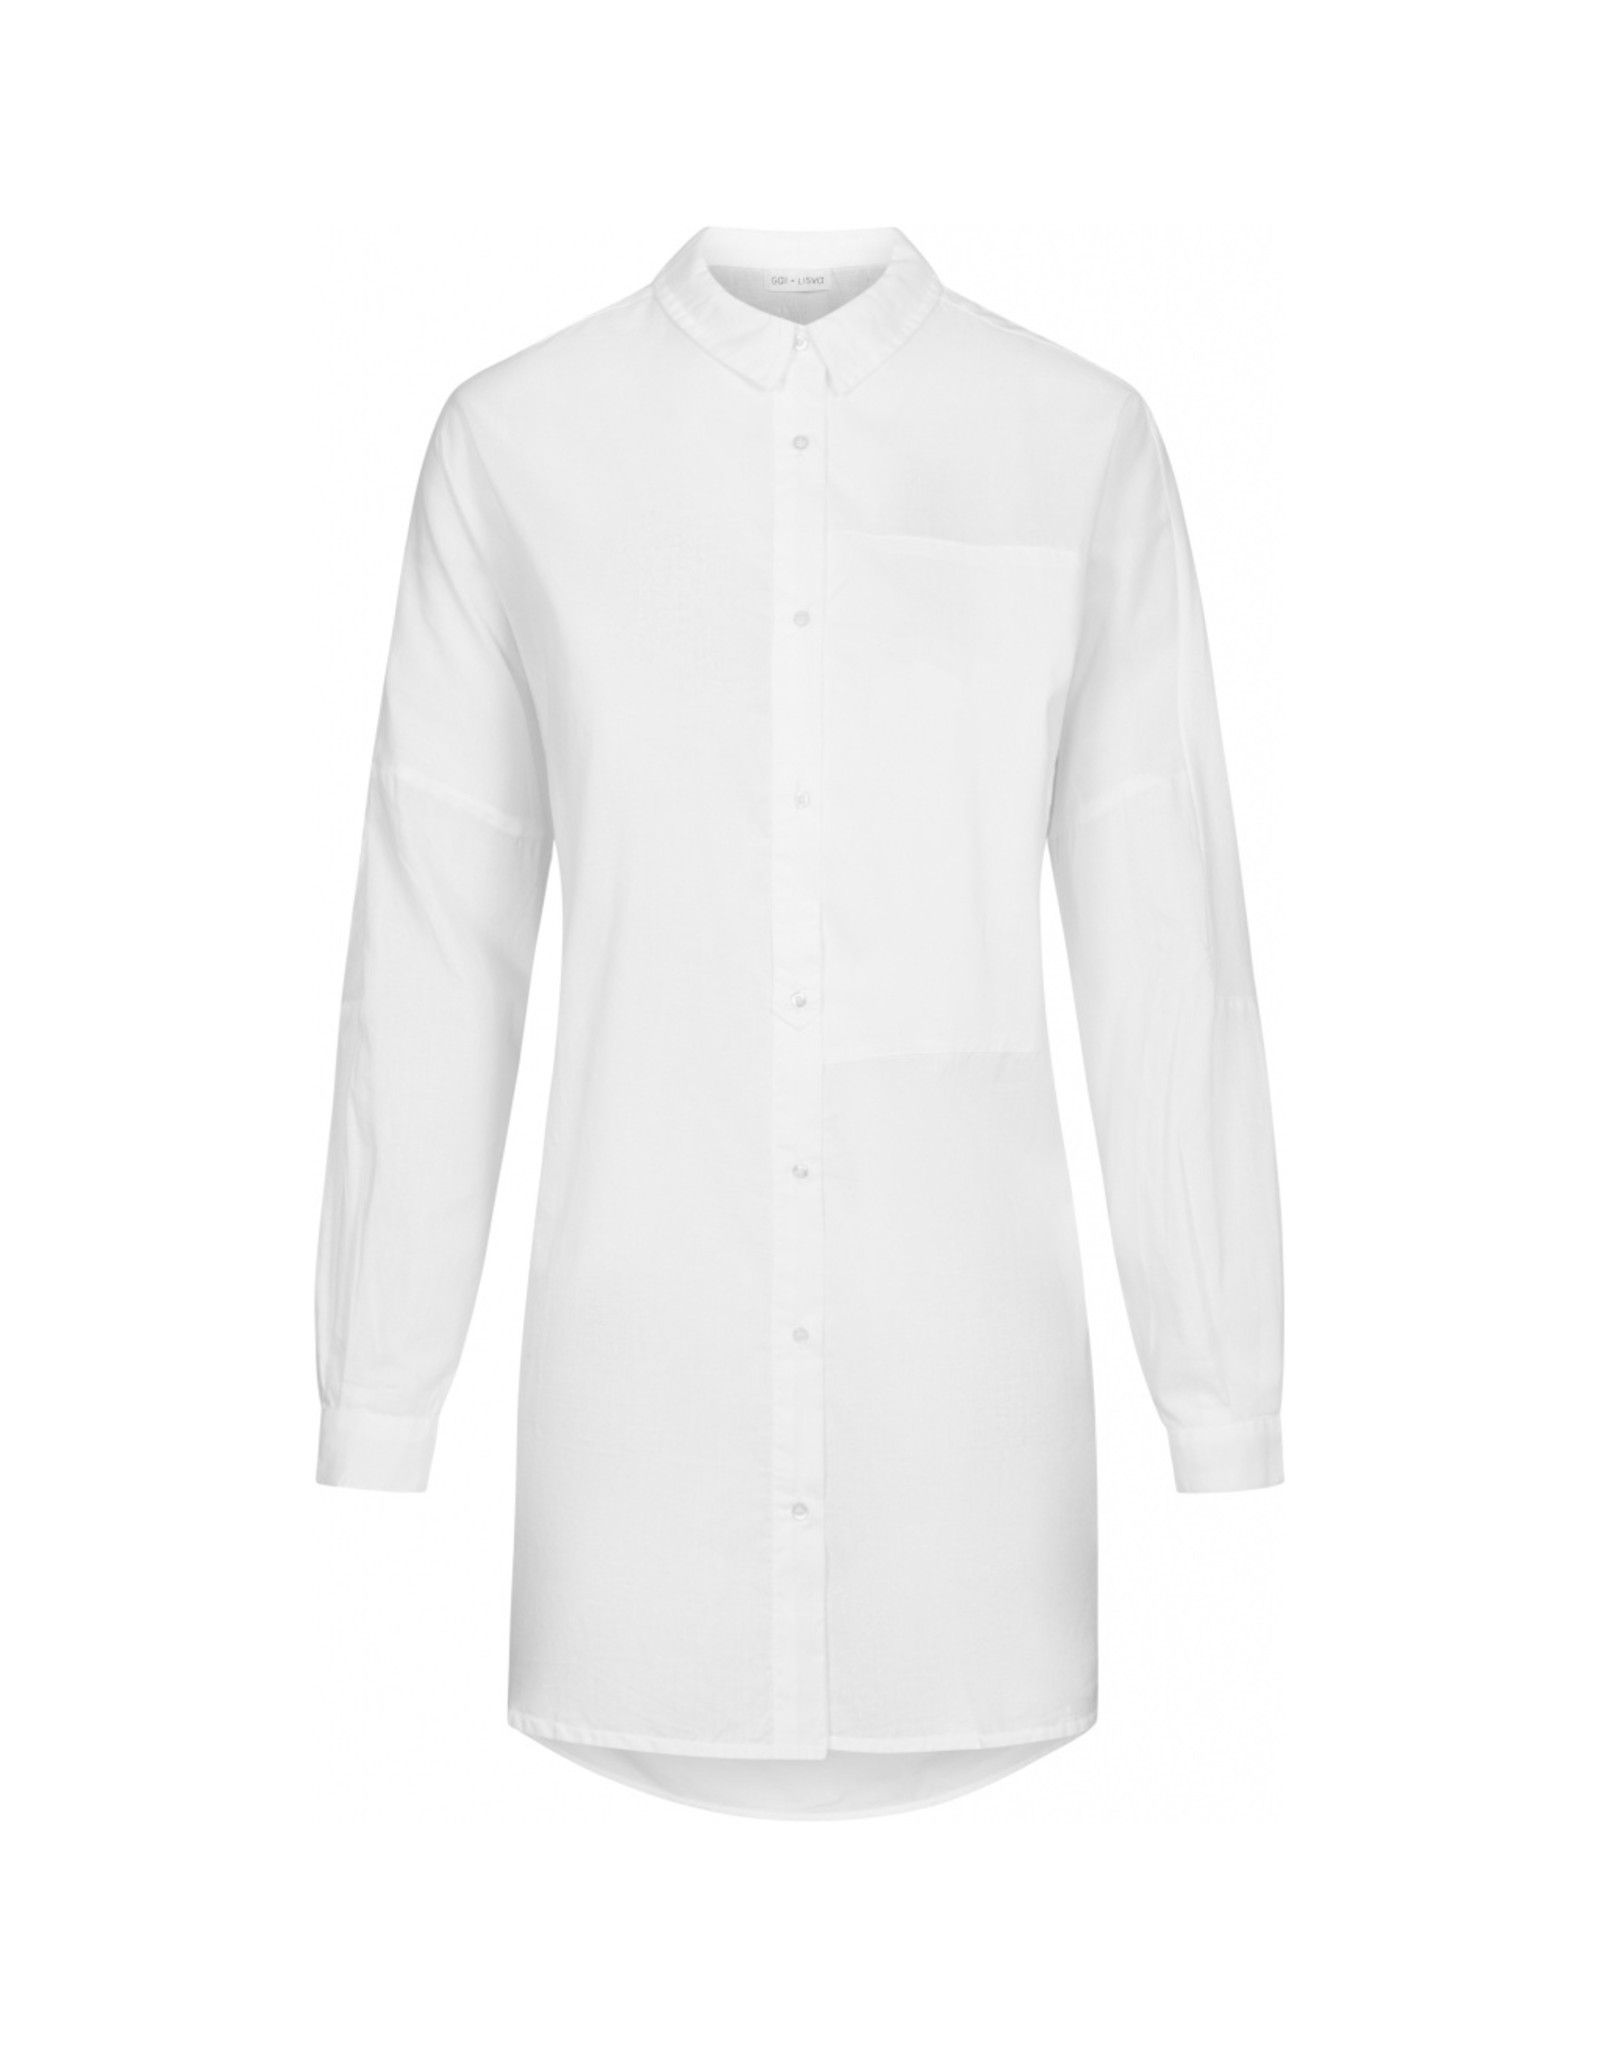 Gai & Lisva Annie Shirt in 100% Organic Cotton